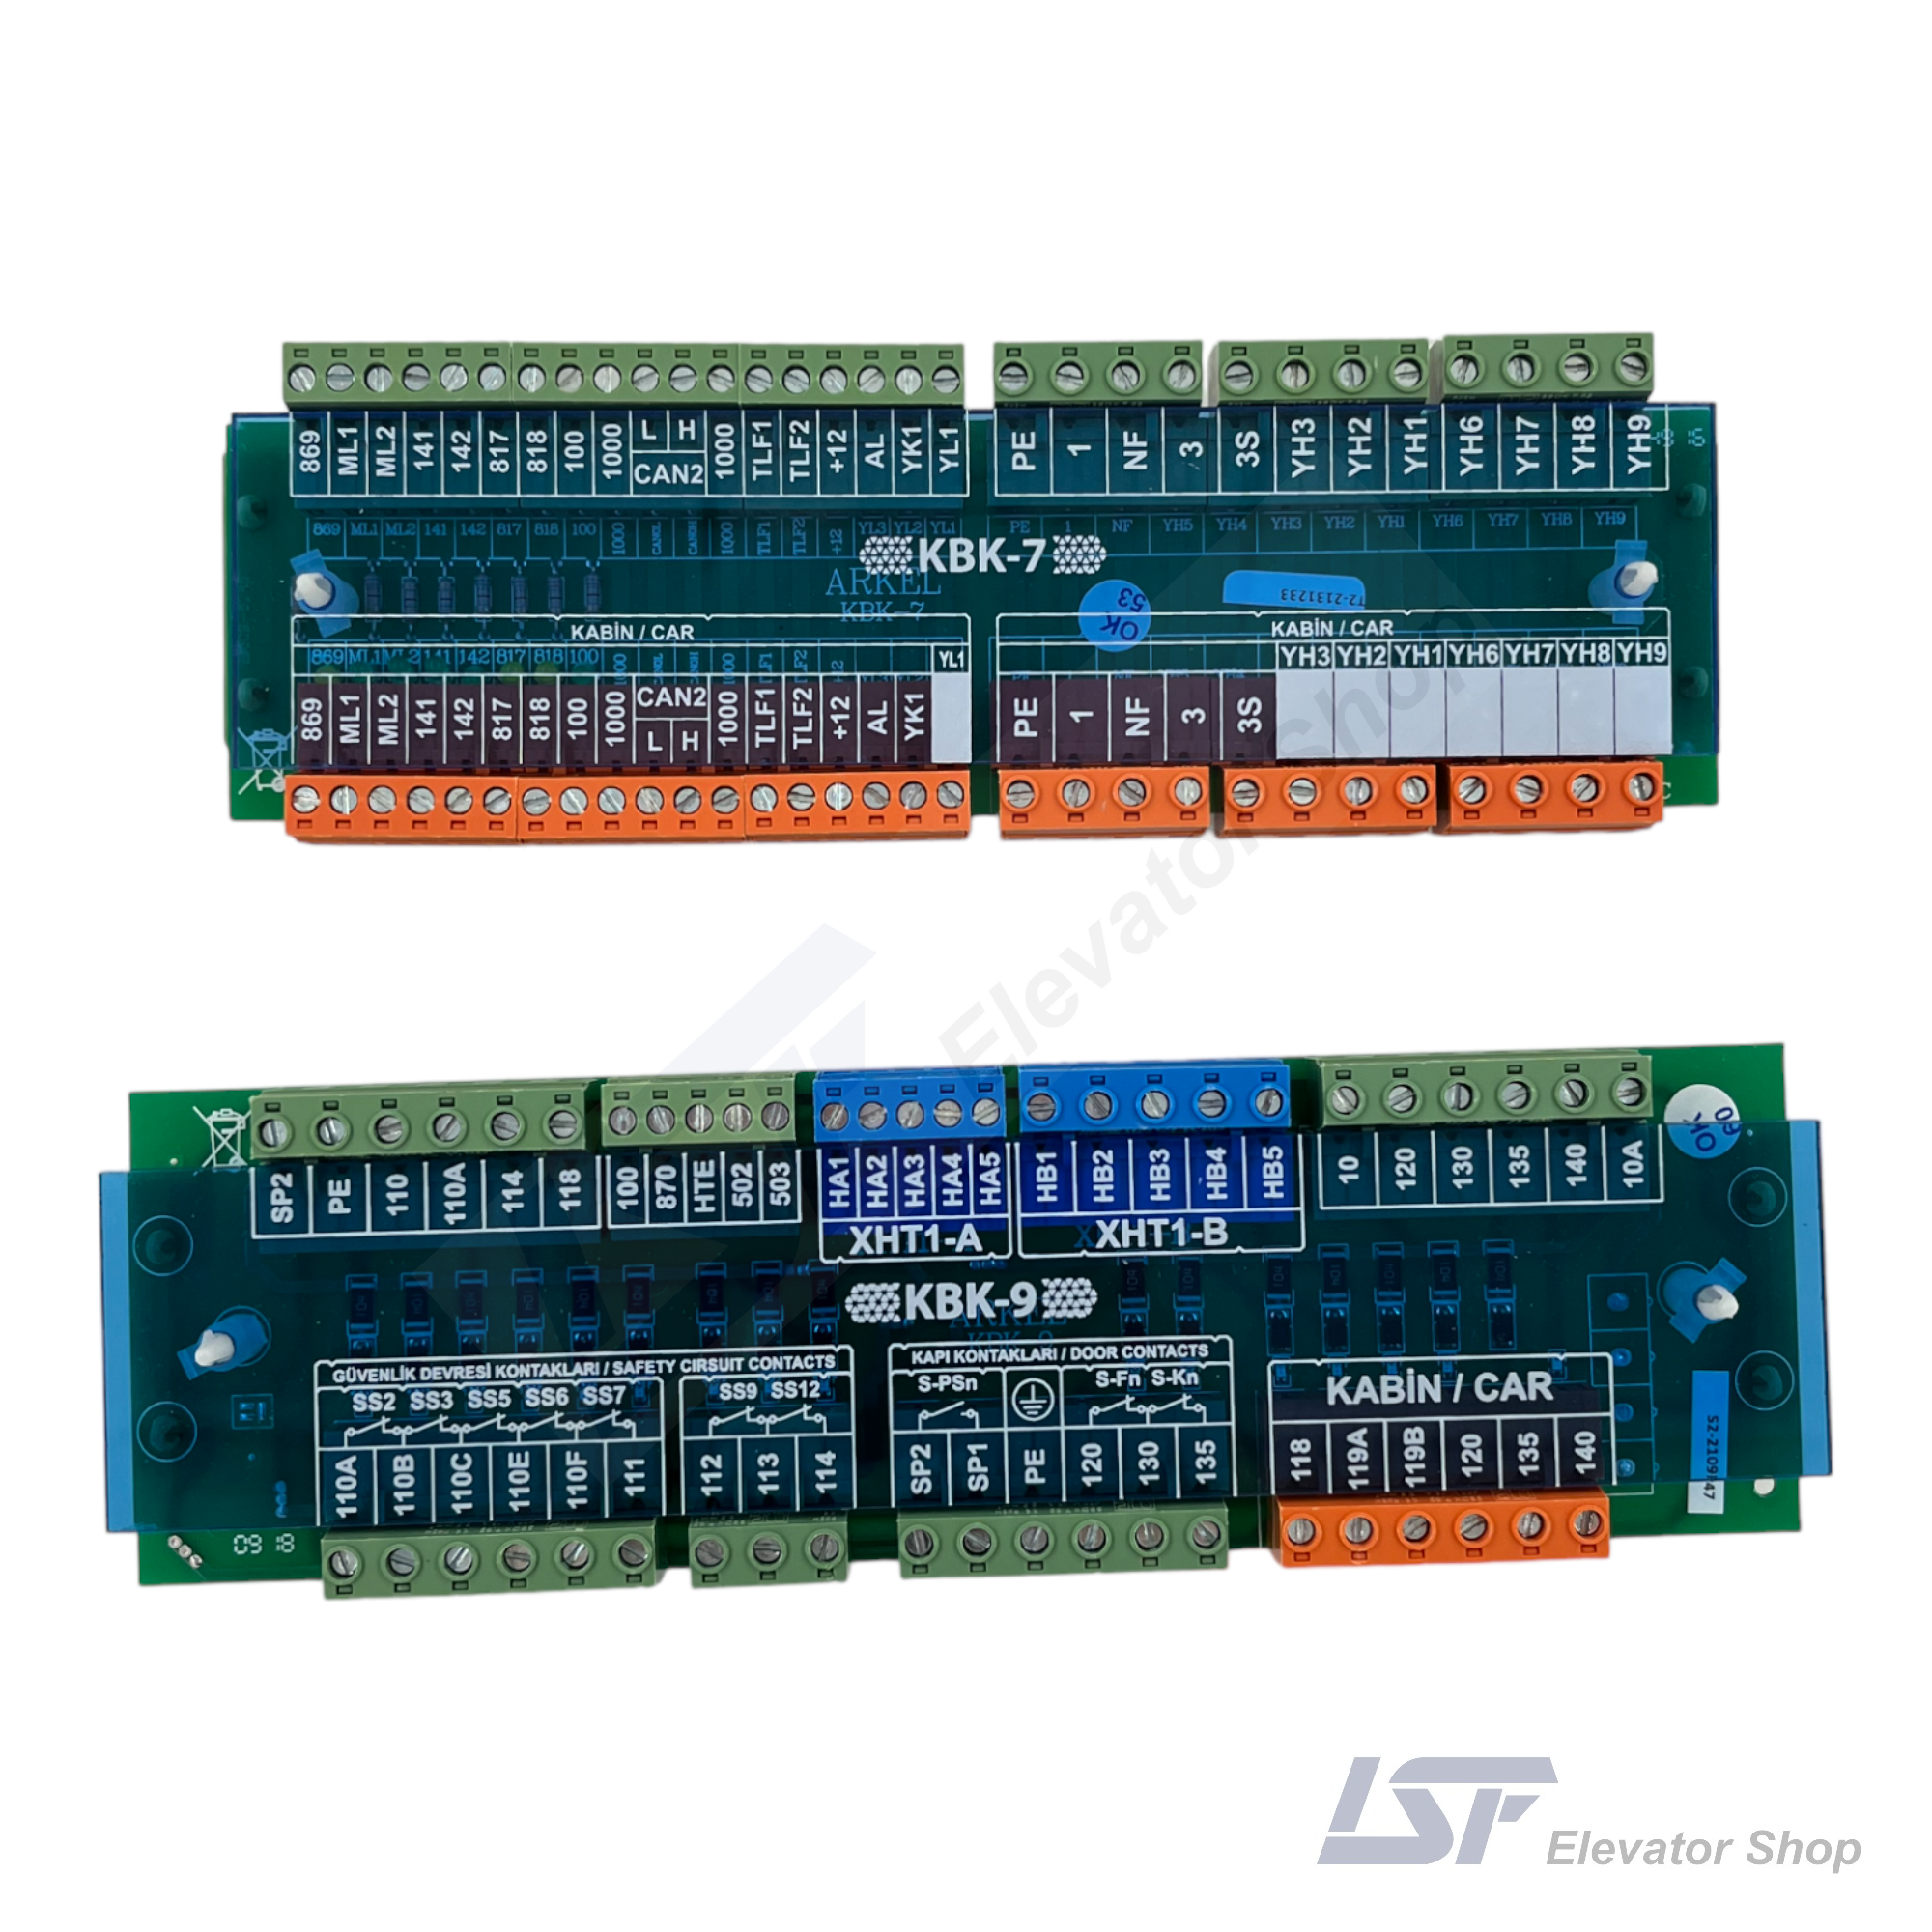 Arkel KBK-7 and KBK-9 Connection Cards for Lift Control Panels